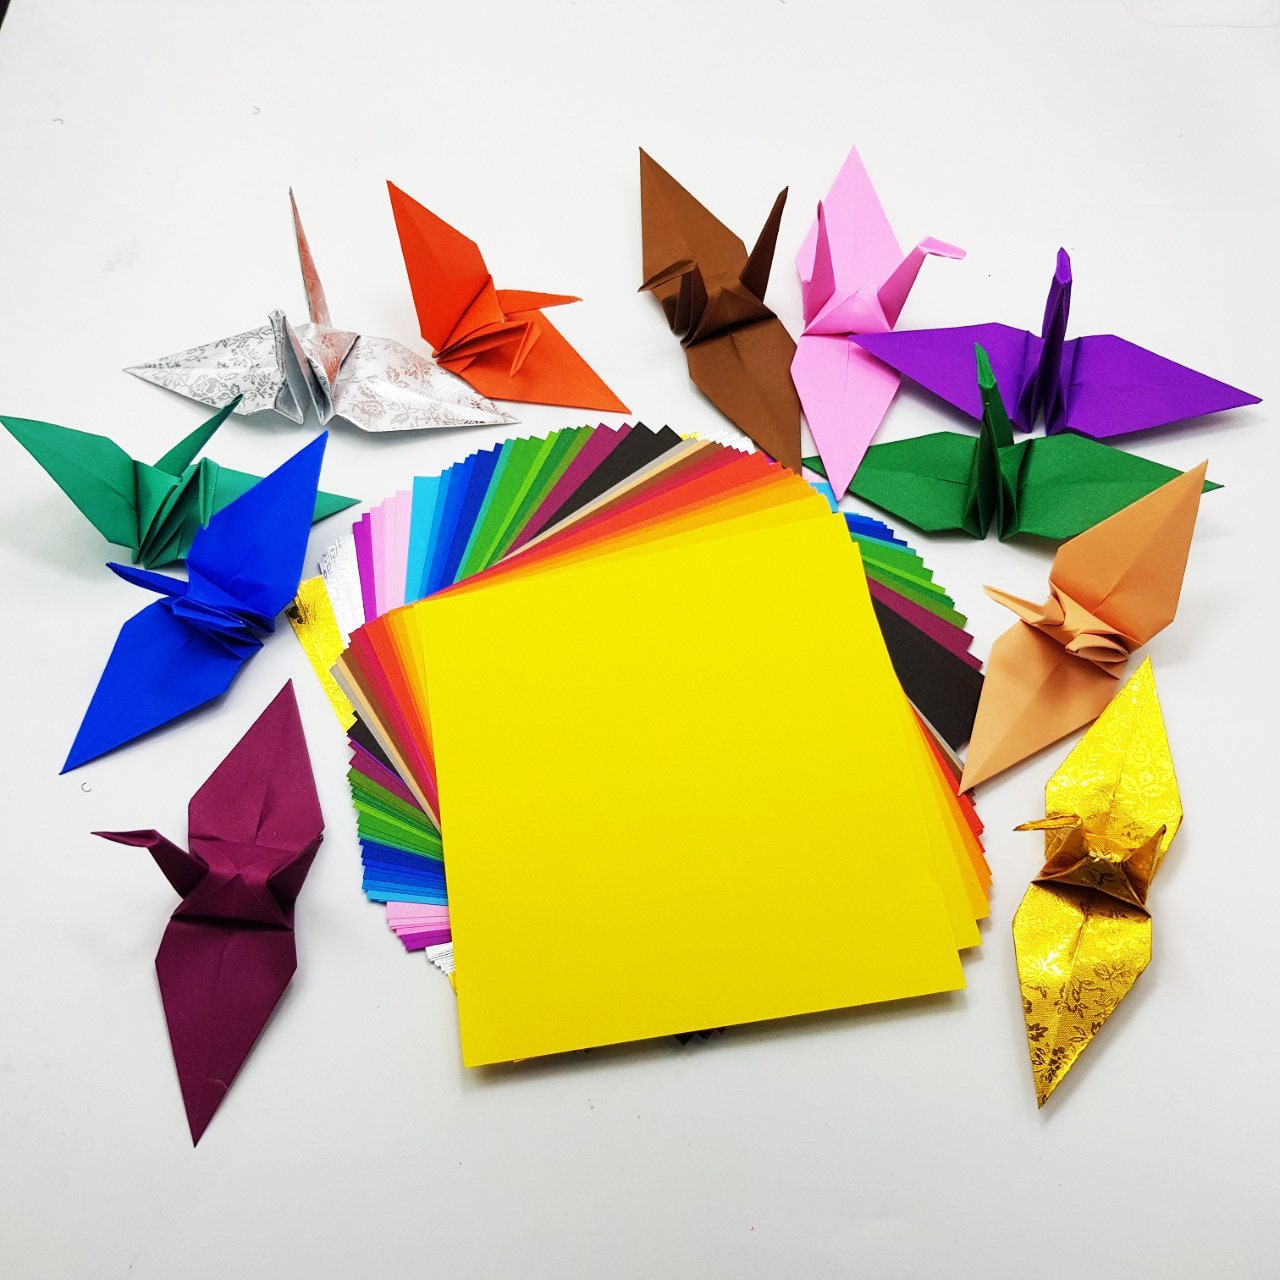 101 fogli di carta origami - 31 colori - 3x3 pollici - Confezione di carta per lavori con la carta, gru, fiori